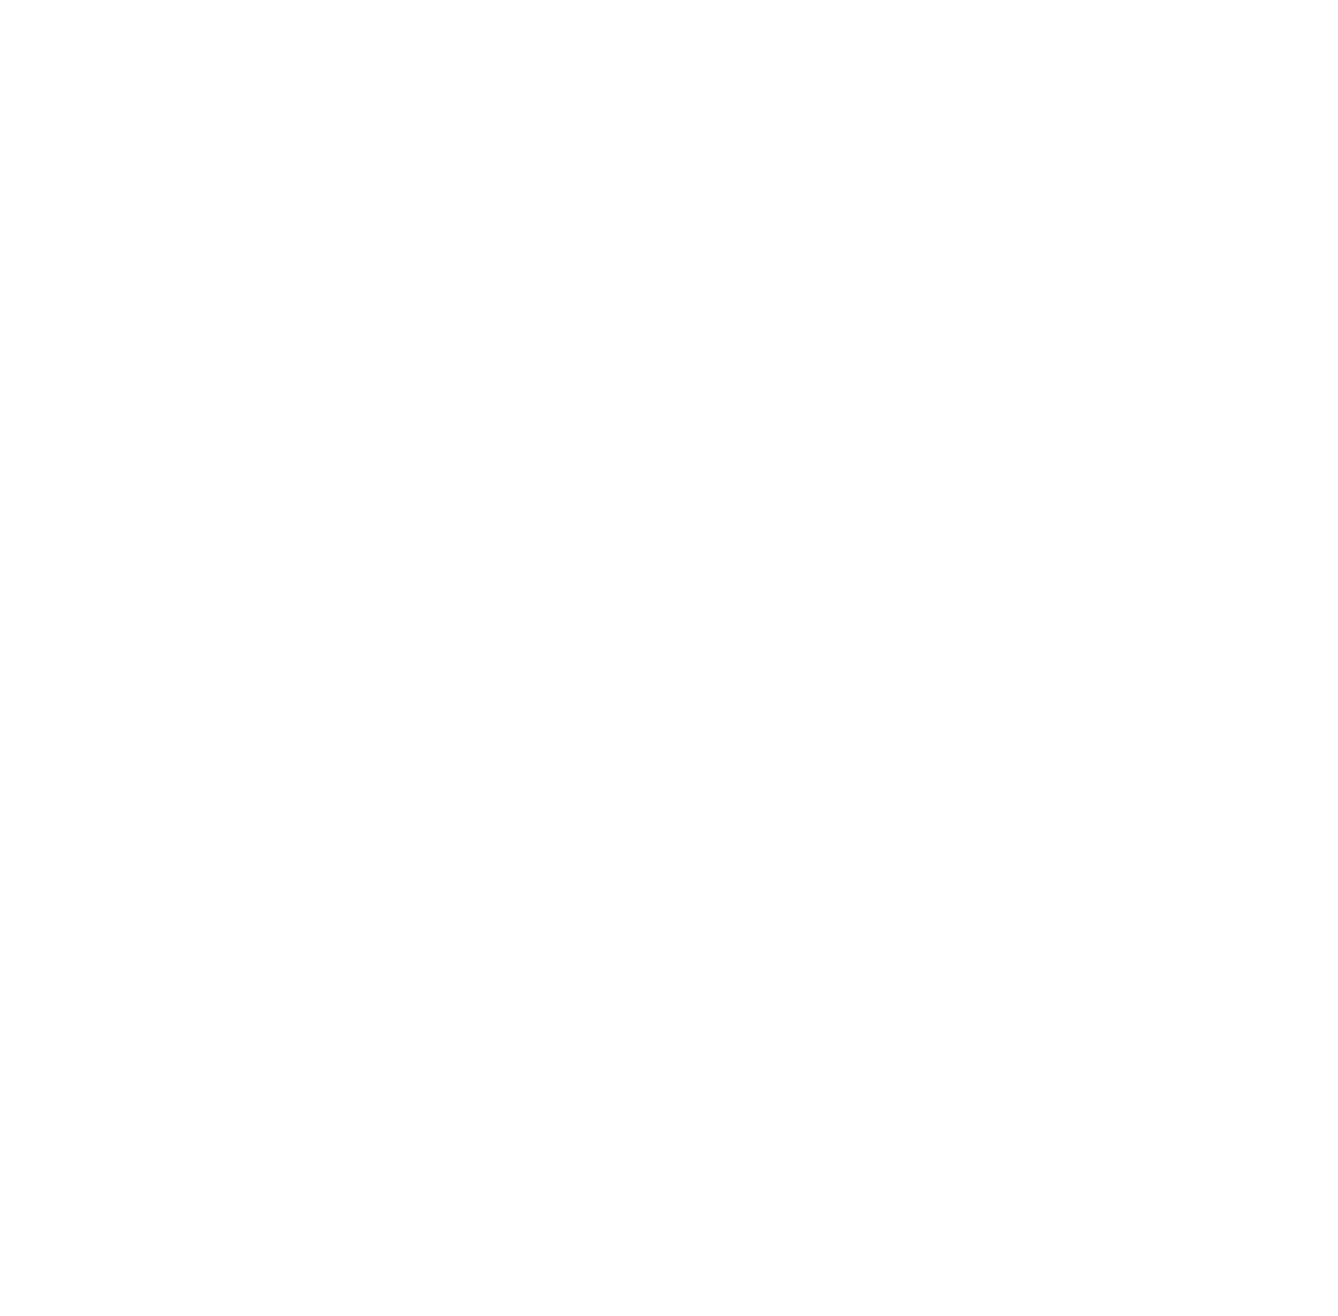 Ray and Arrow